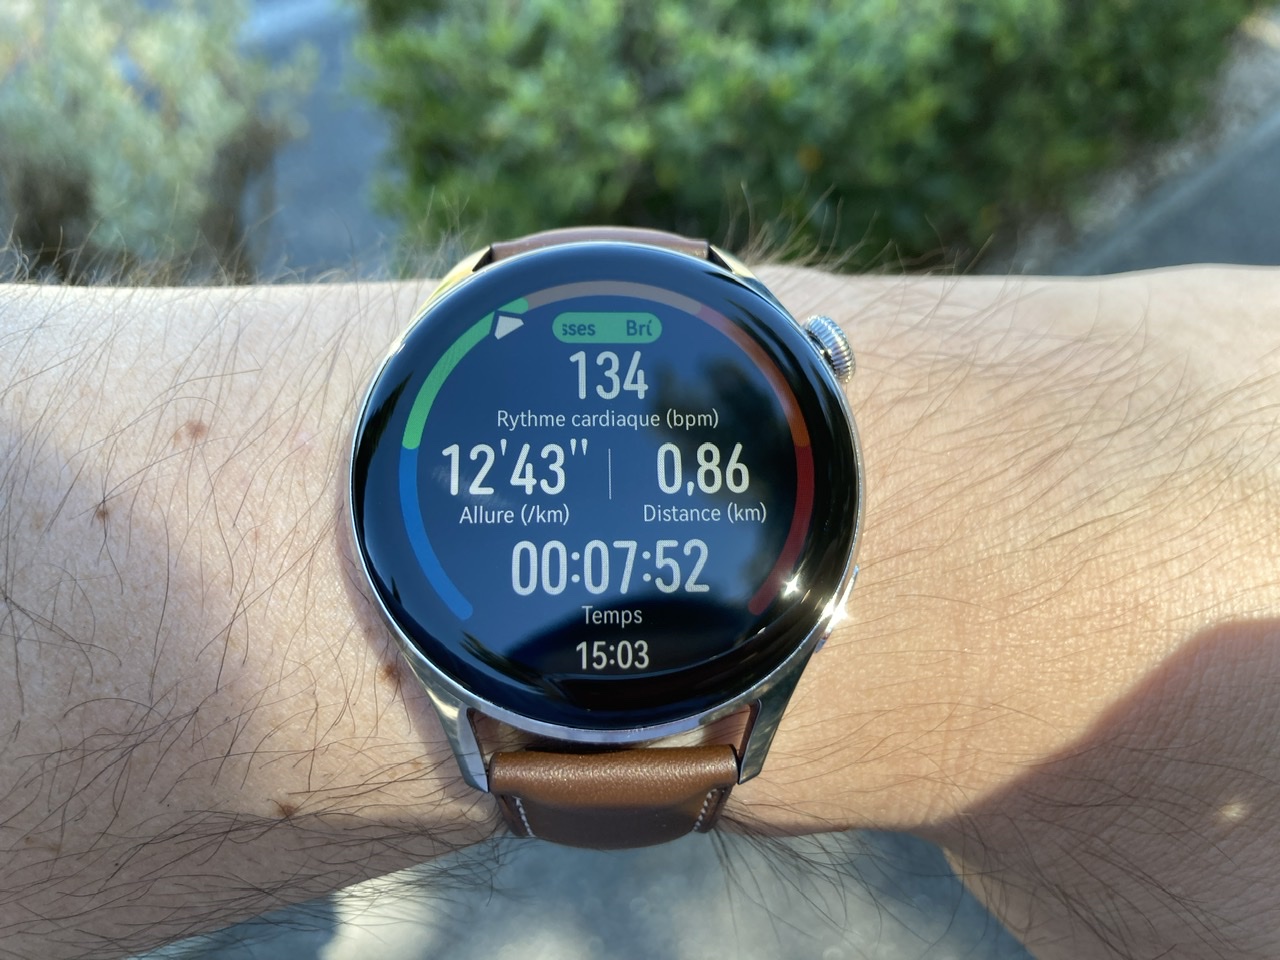 Ice-Watch lance sa première montre connectée à 99 €